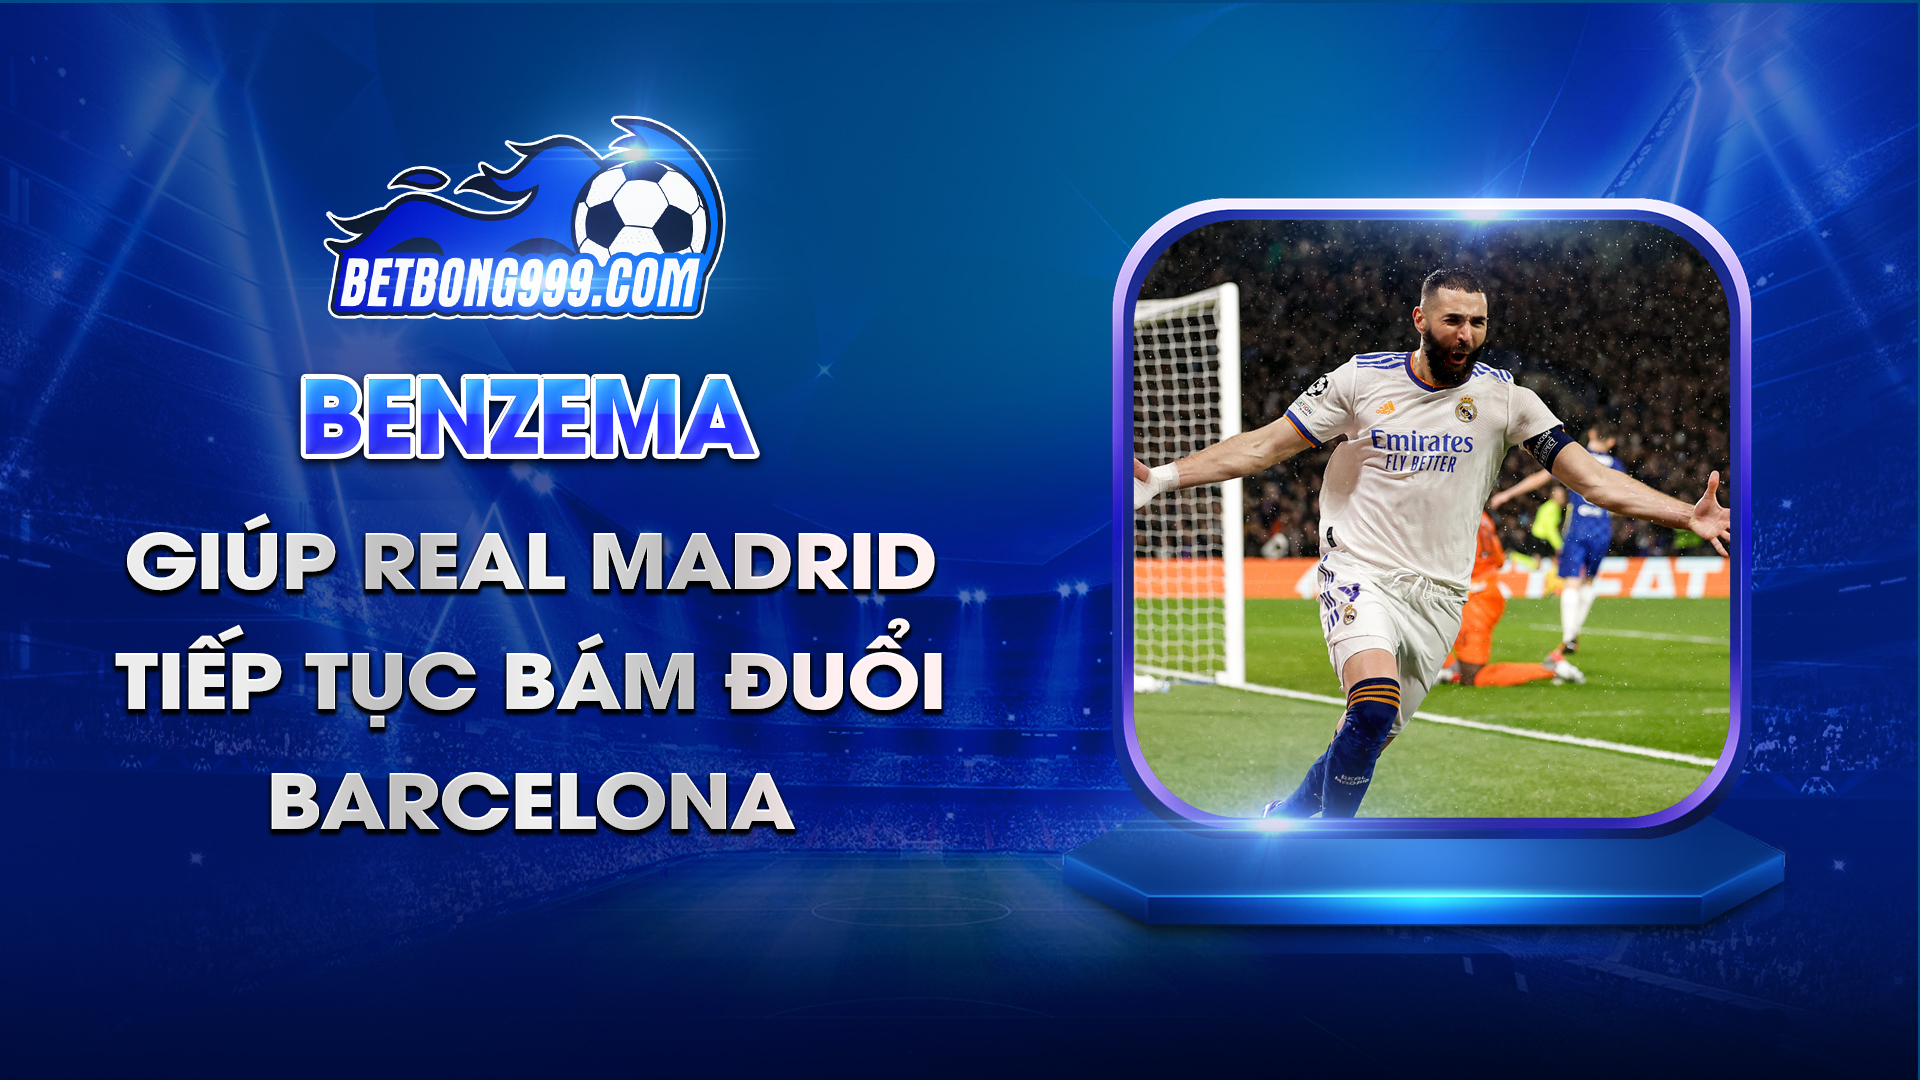 Benzema giúp Real Madrid tiếp tục bám đuổi Barcelona